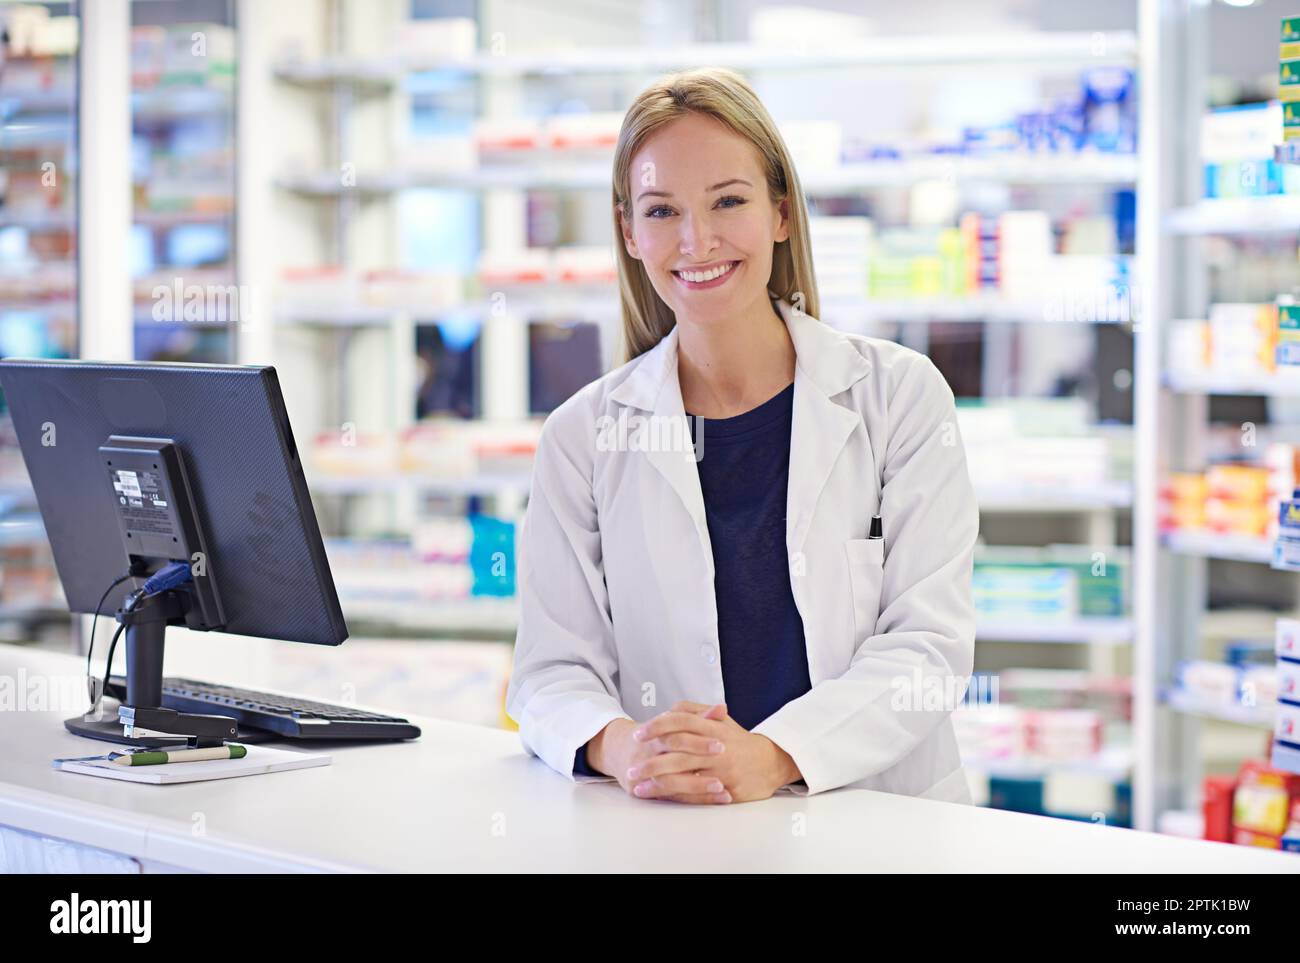 Chaque client est un individu. Portrait d'un pharmacien attrayant debout au comptoir d'ordonnance Banque D'Images